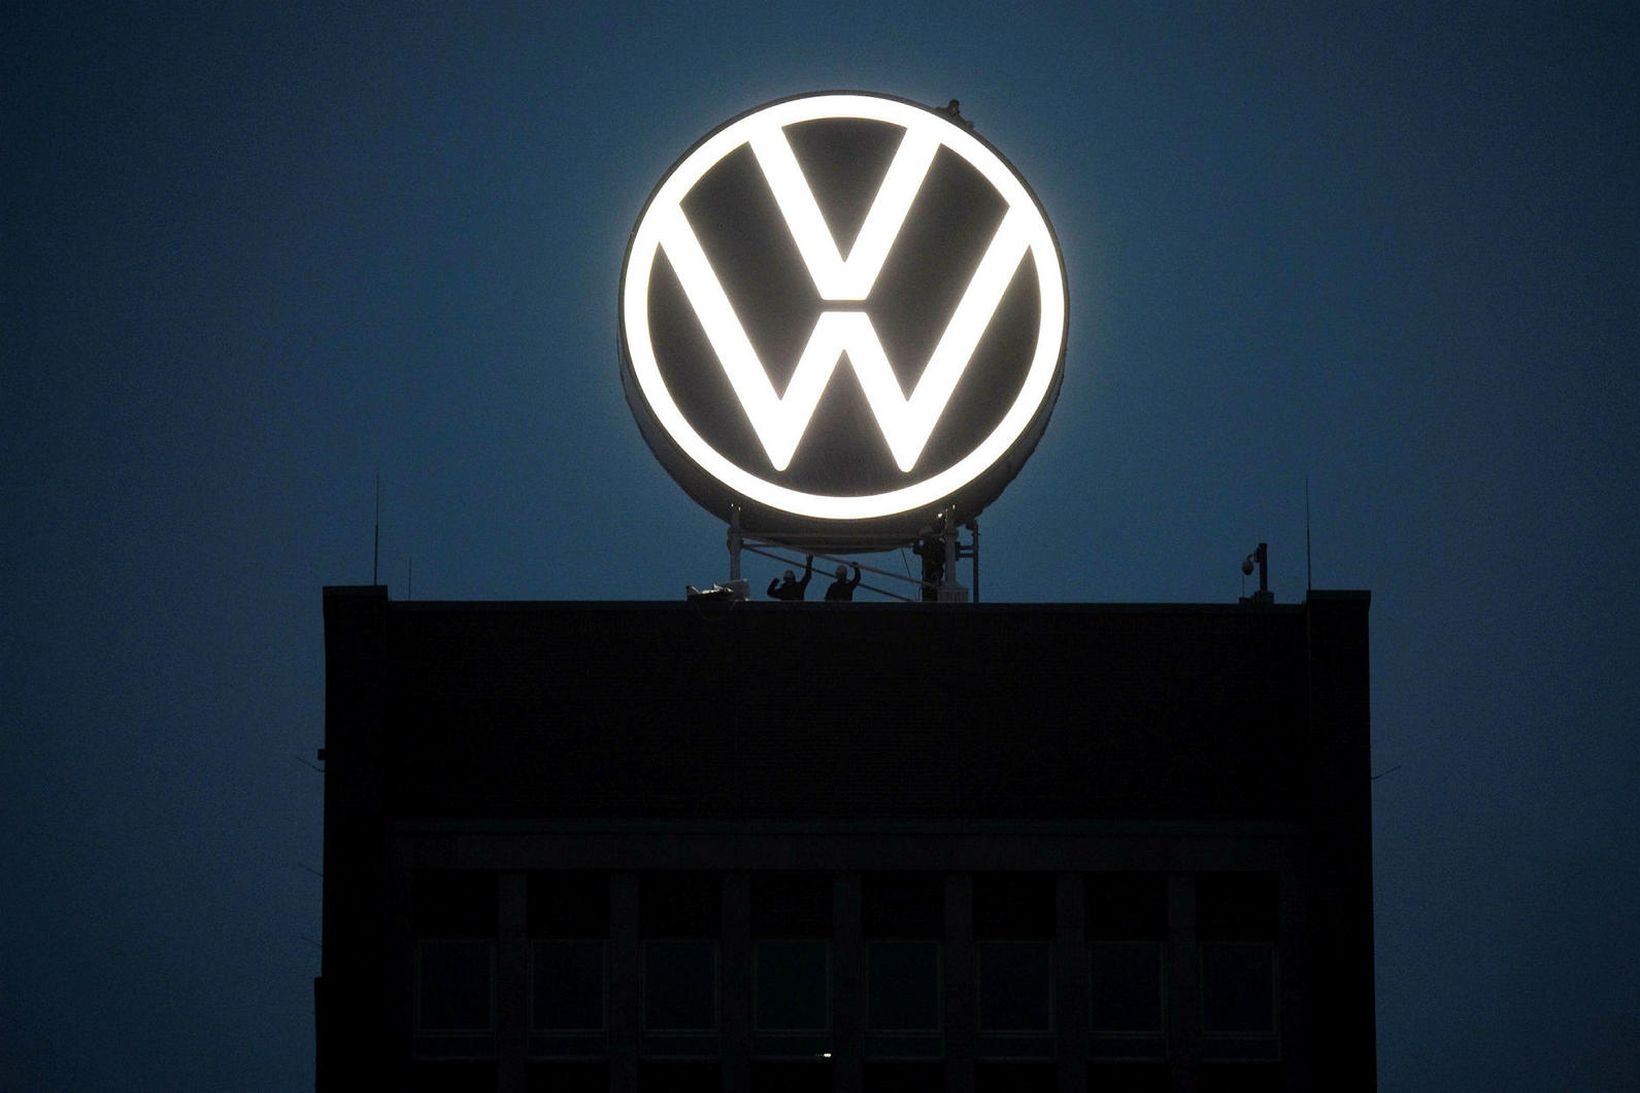 Höfuðstöðvar Volkswagen (VW) í Wolfsburg.